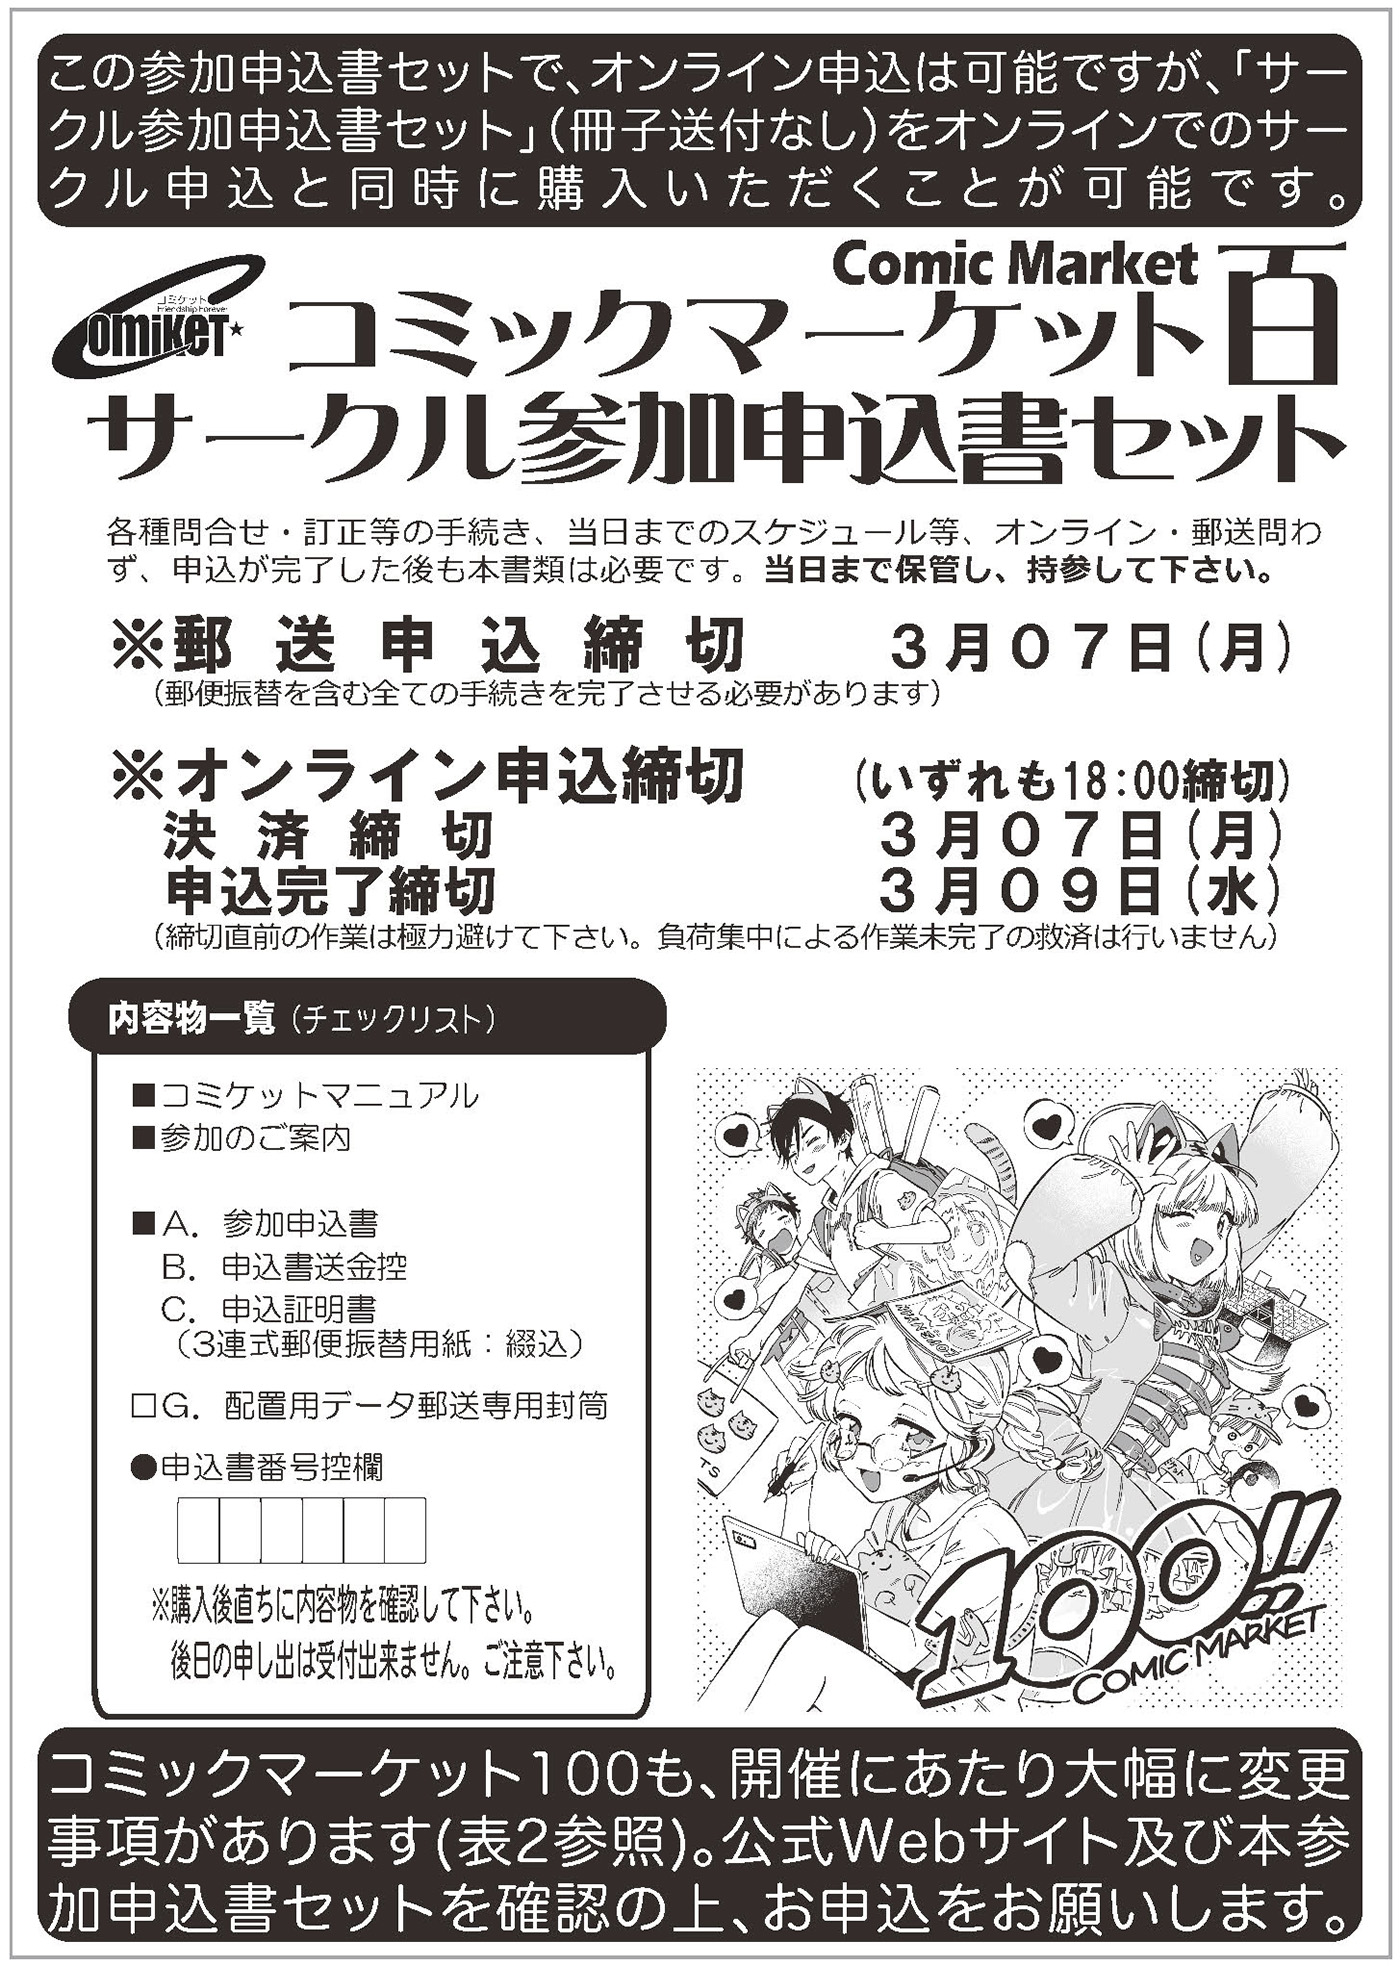 C100 コミケ コミックマーケット100 サークルチケット 8月14日 2日目